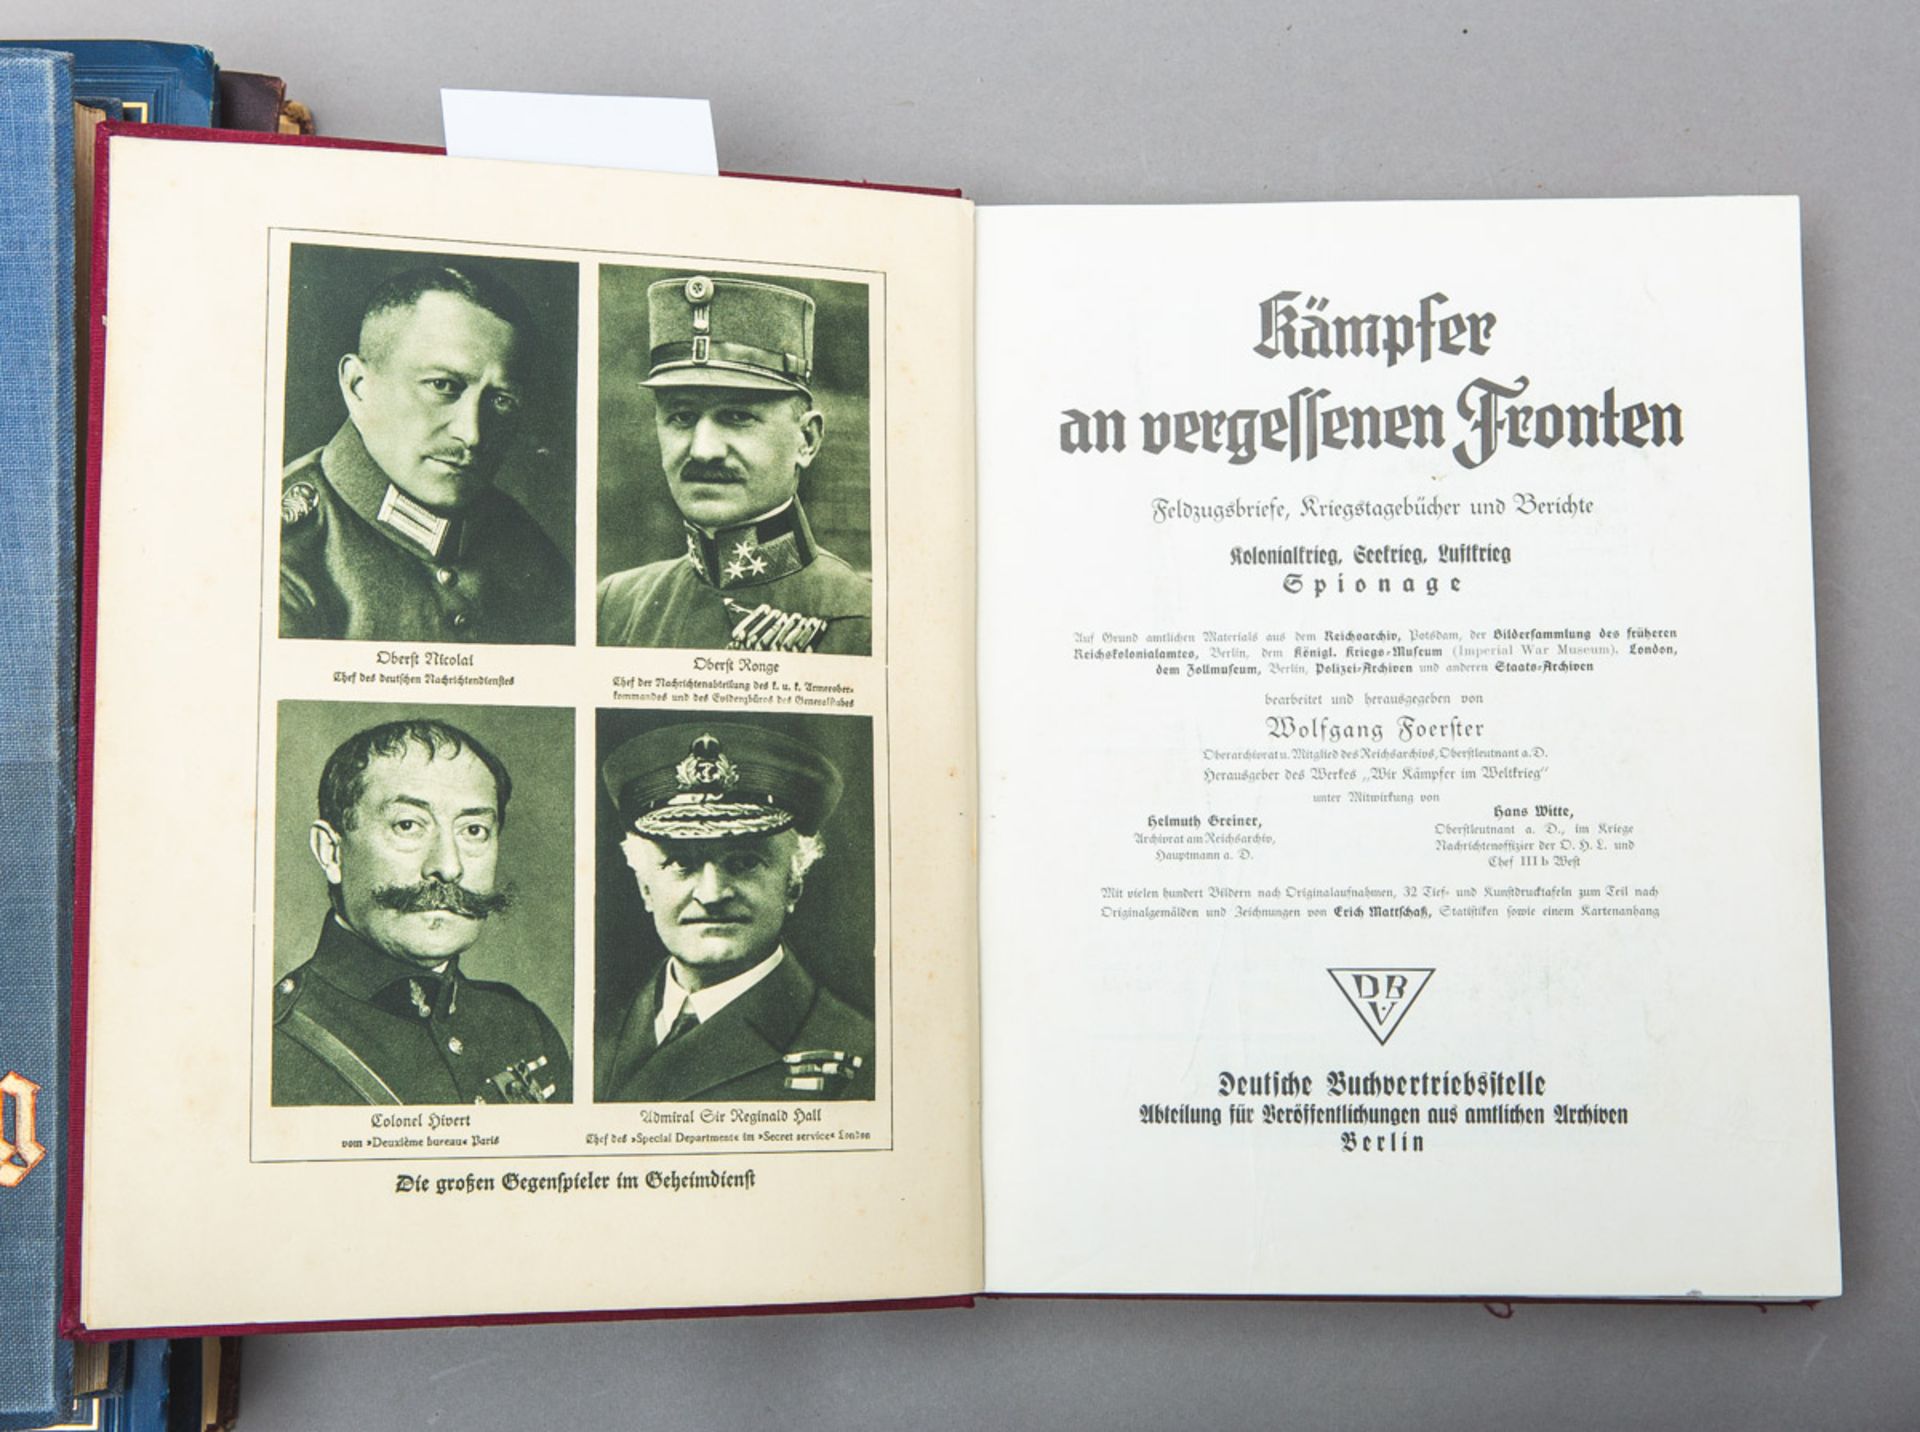 Foerster, Wolfgang (Hrsg.), "Kämpfer an vergessenen Fronten - See-, Luft-, und Kolonialkrieg - Spion - Bild 2 aus 2